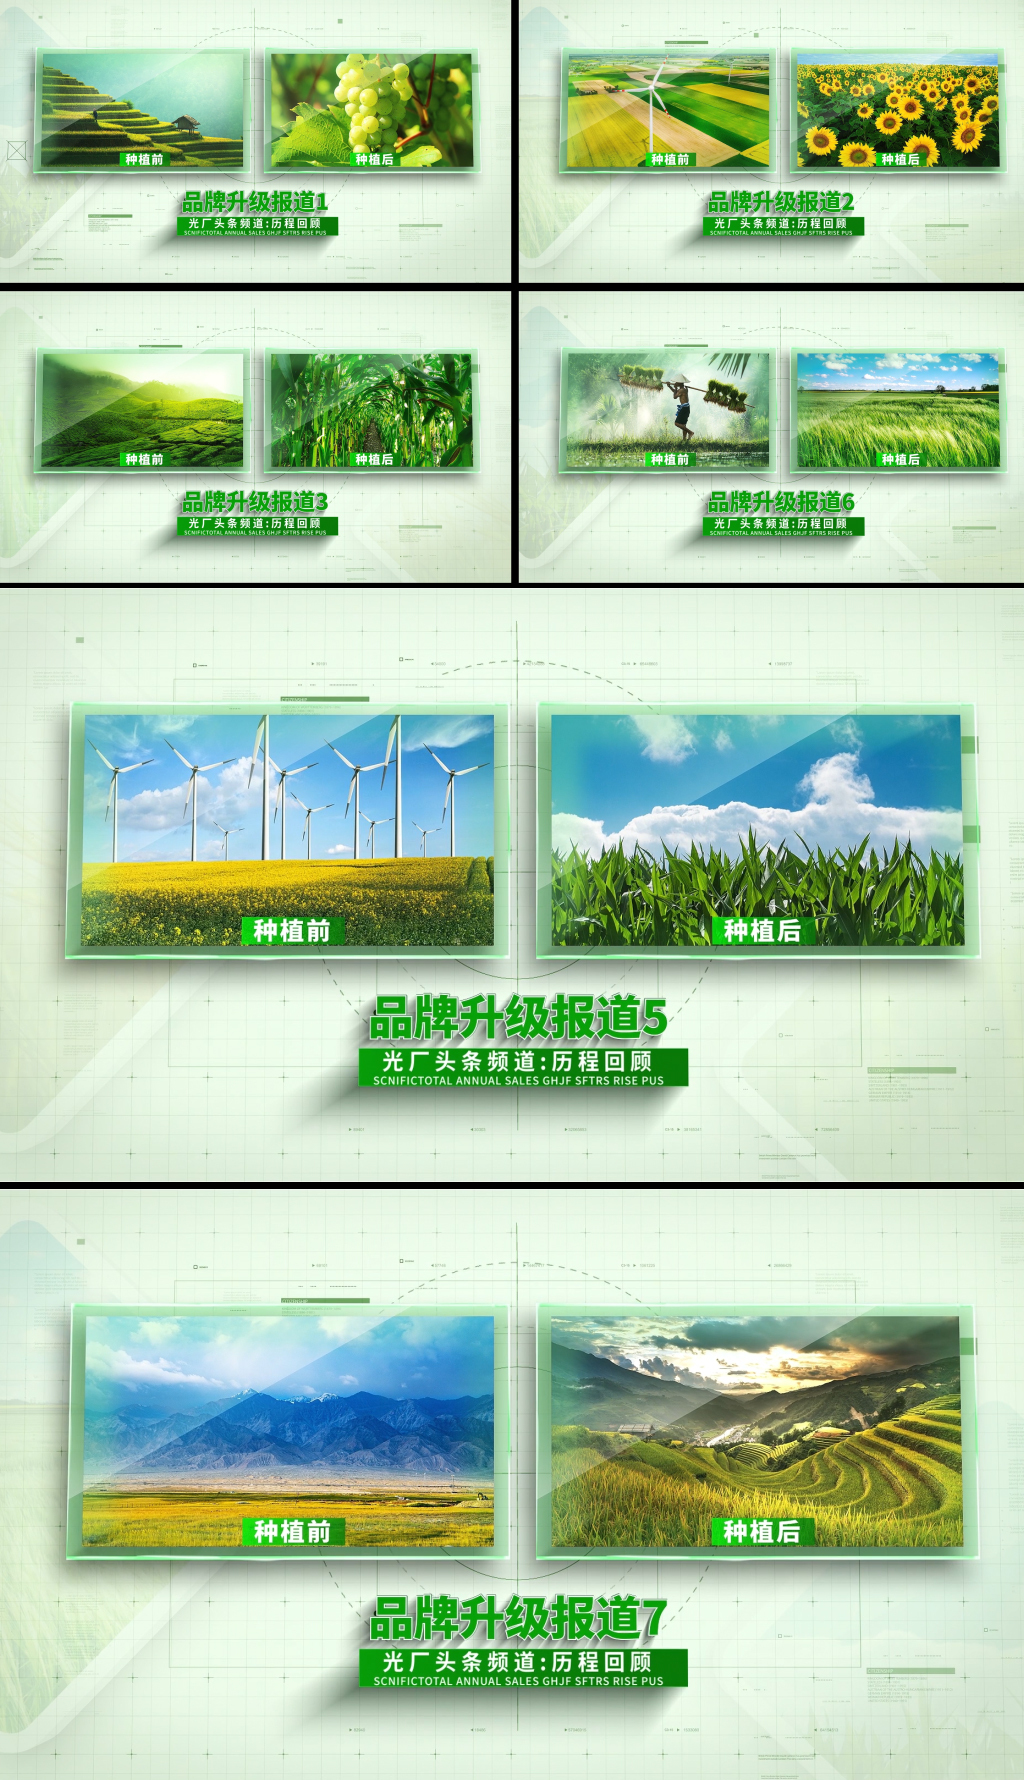 绿色农业科技双图对比图文展示片头AE模板